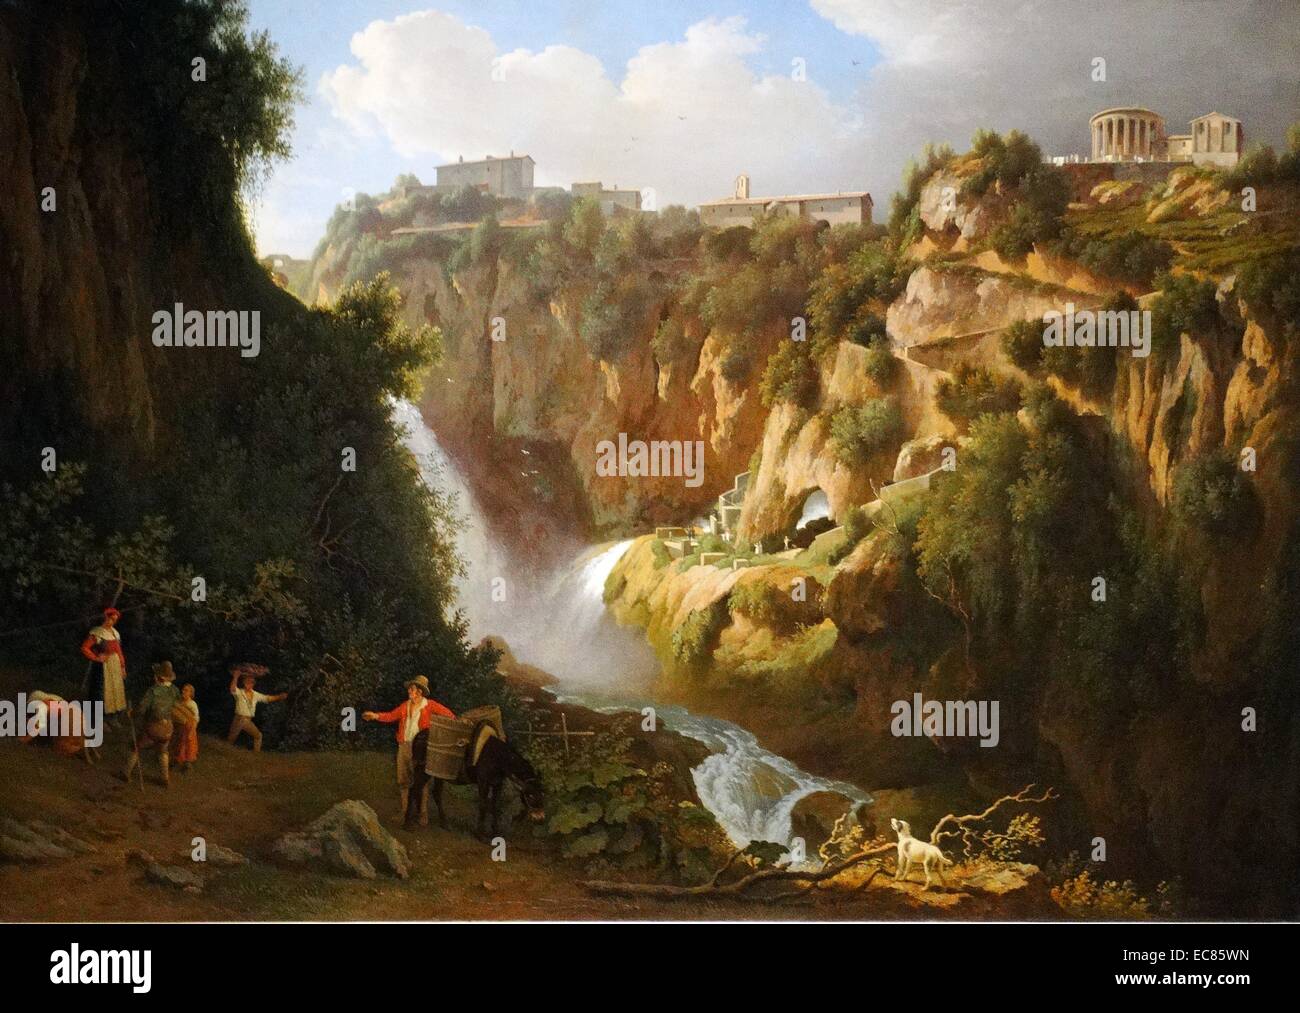 Peinture de la cascade de Tivoli, Italie. Peint par Abraham Teerlink (1776-1857). Datée 1824 Banque D'Images